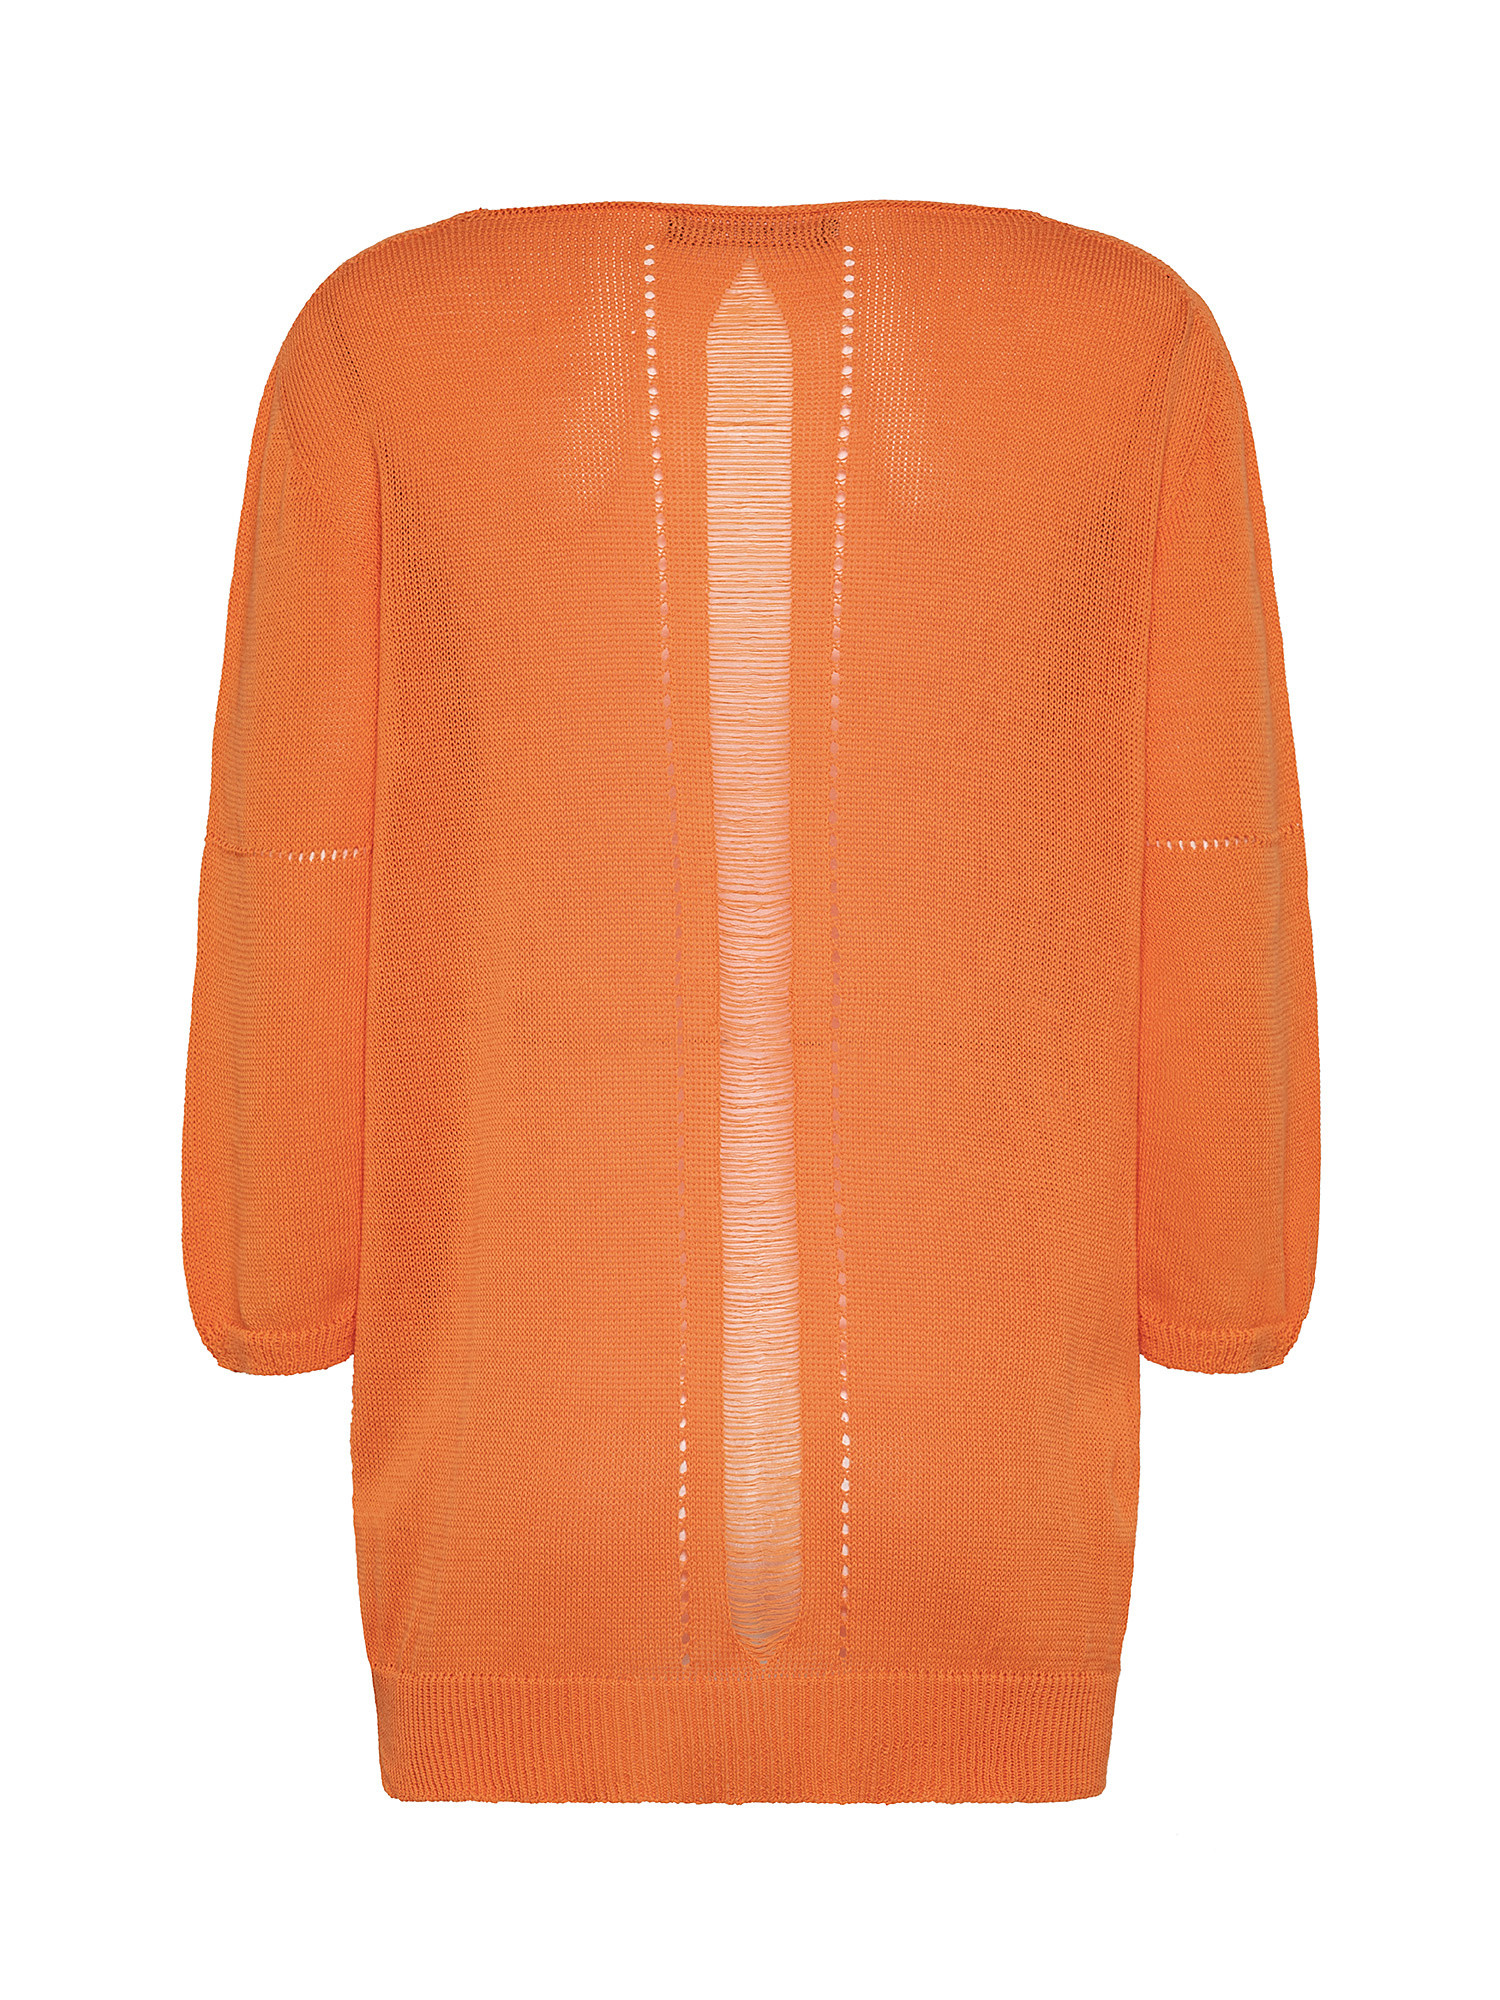 Maglia tricot, Arancione, large image number 1